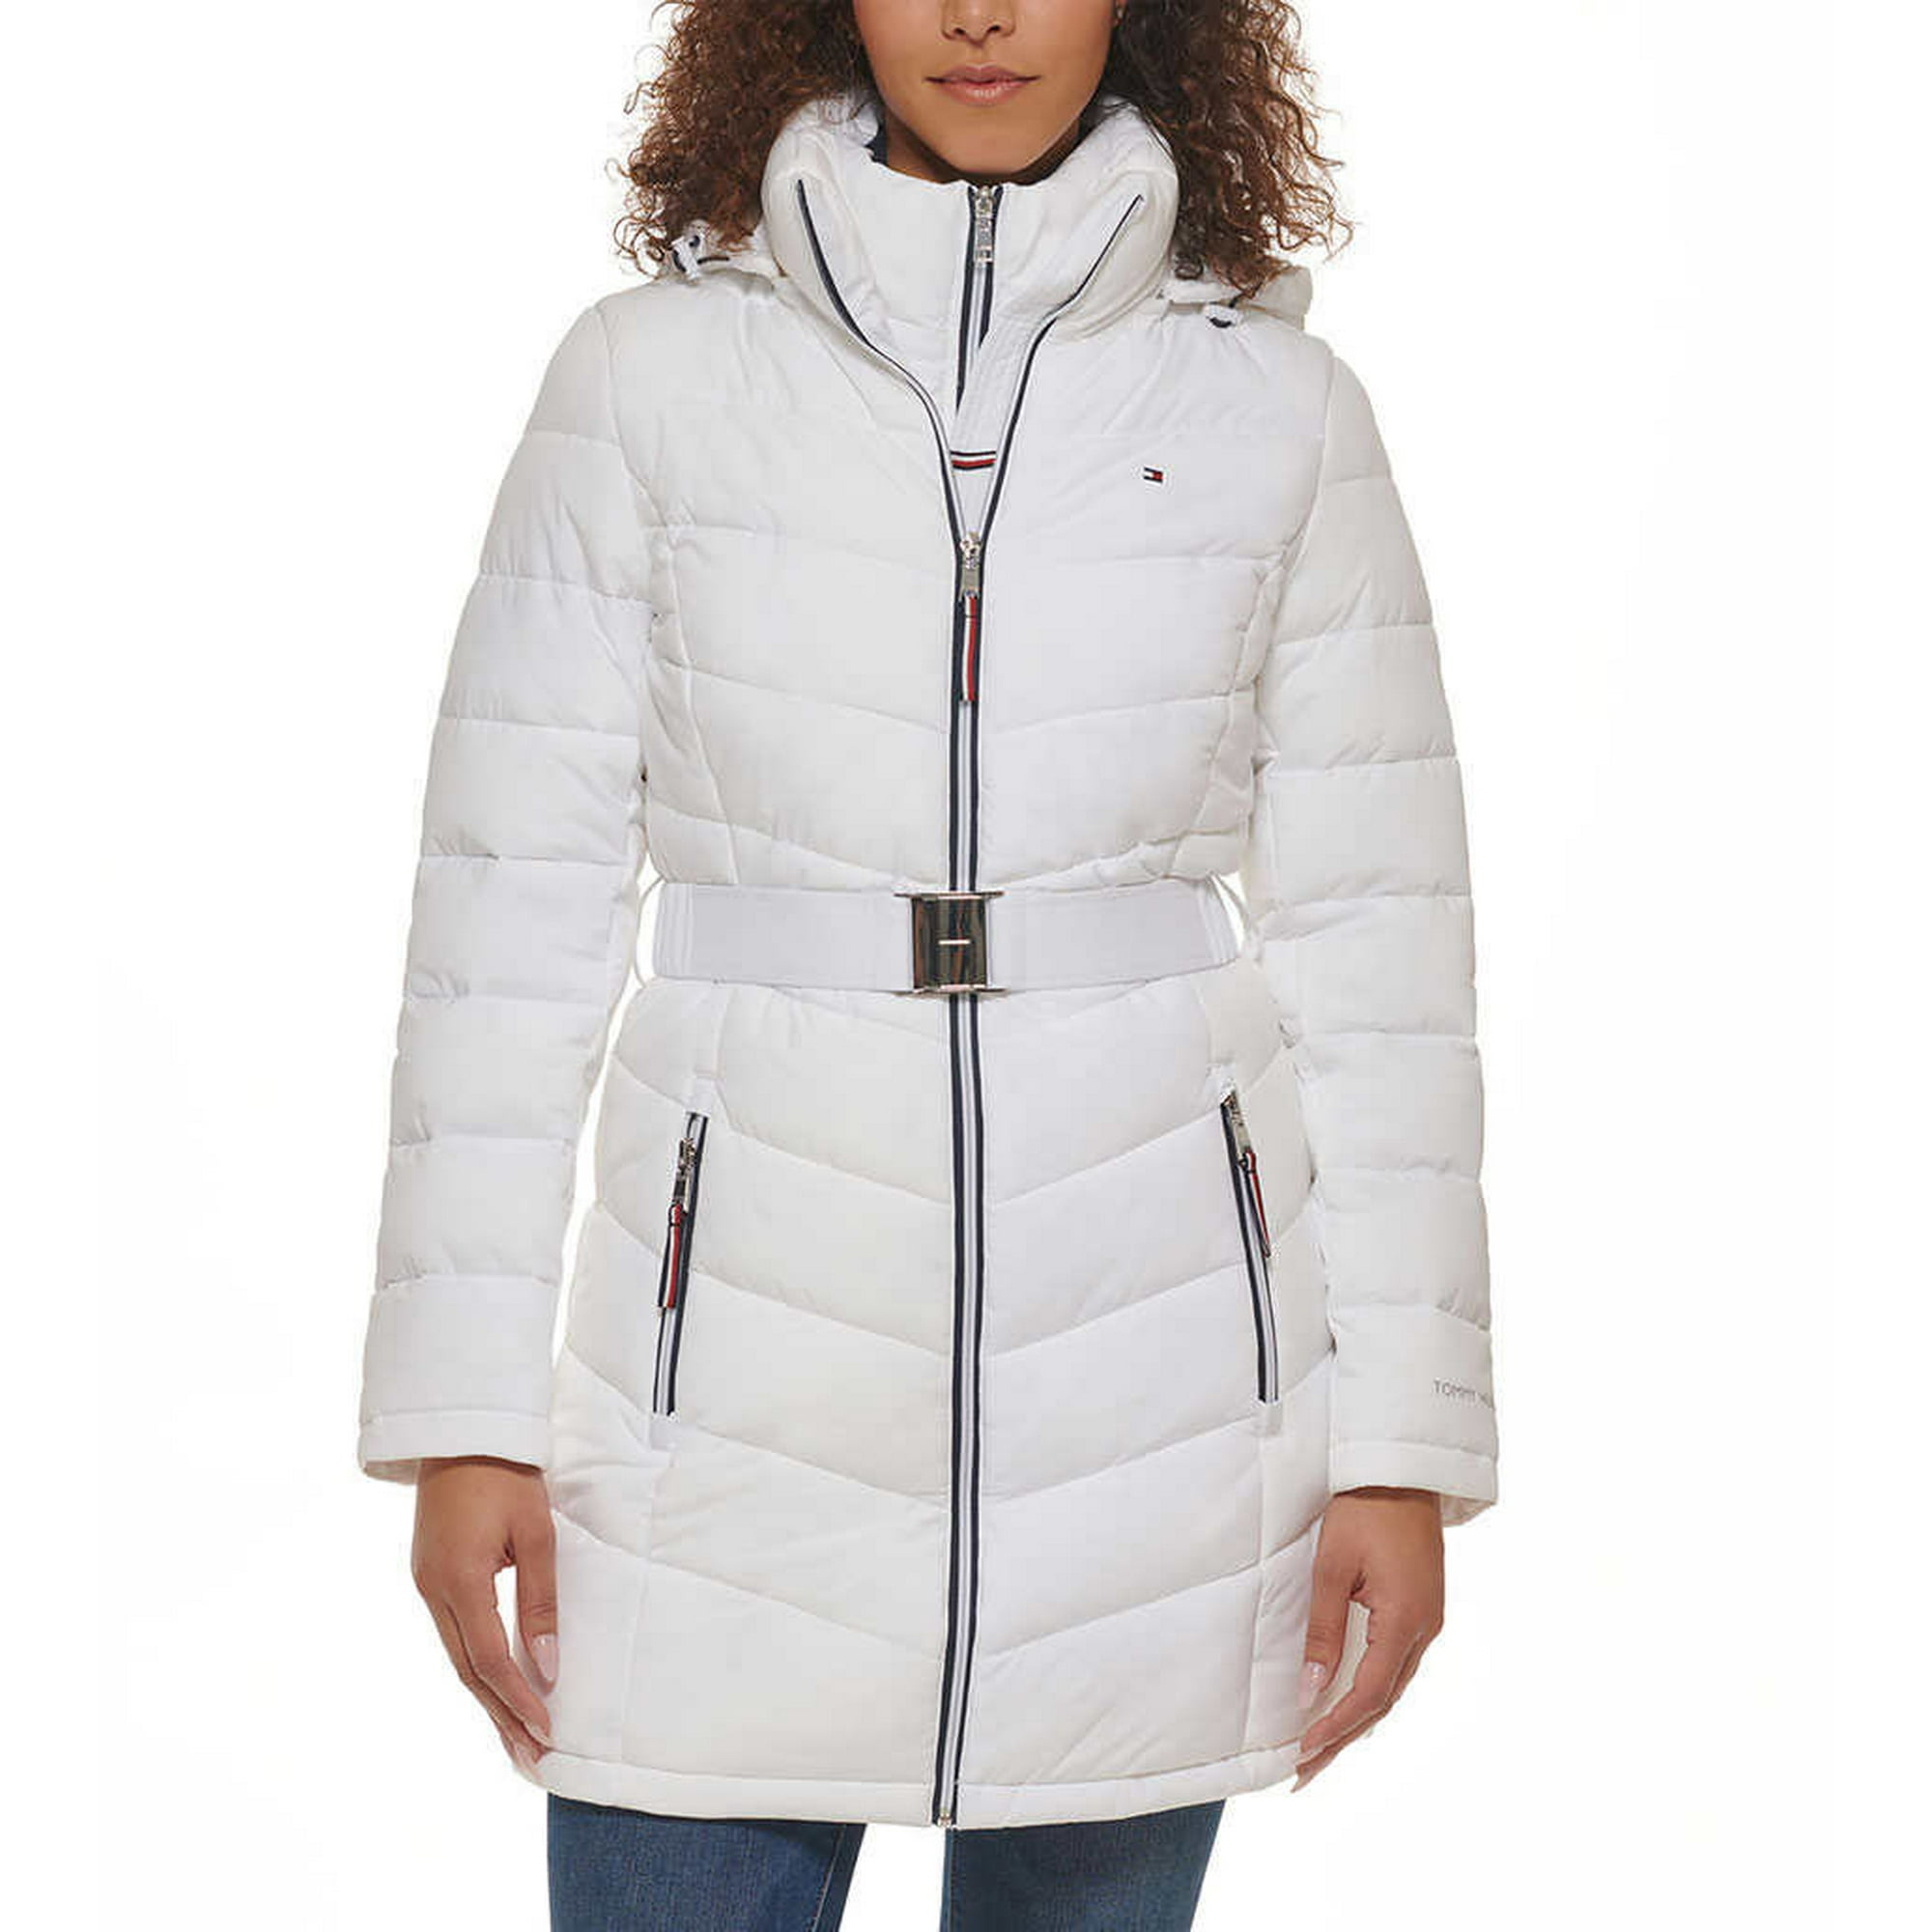 mærke Aflede kam Tommy Hilfiger Women's Belted Puffer Coat Jacket with Hood, White, XL -  Walmart.com